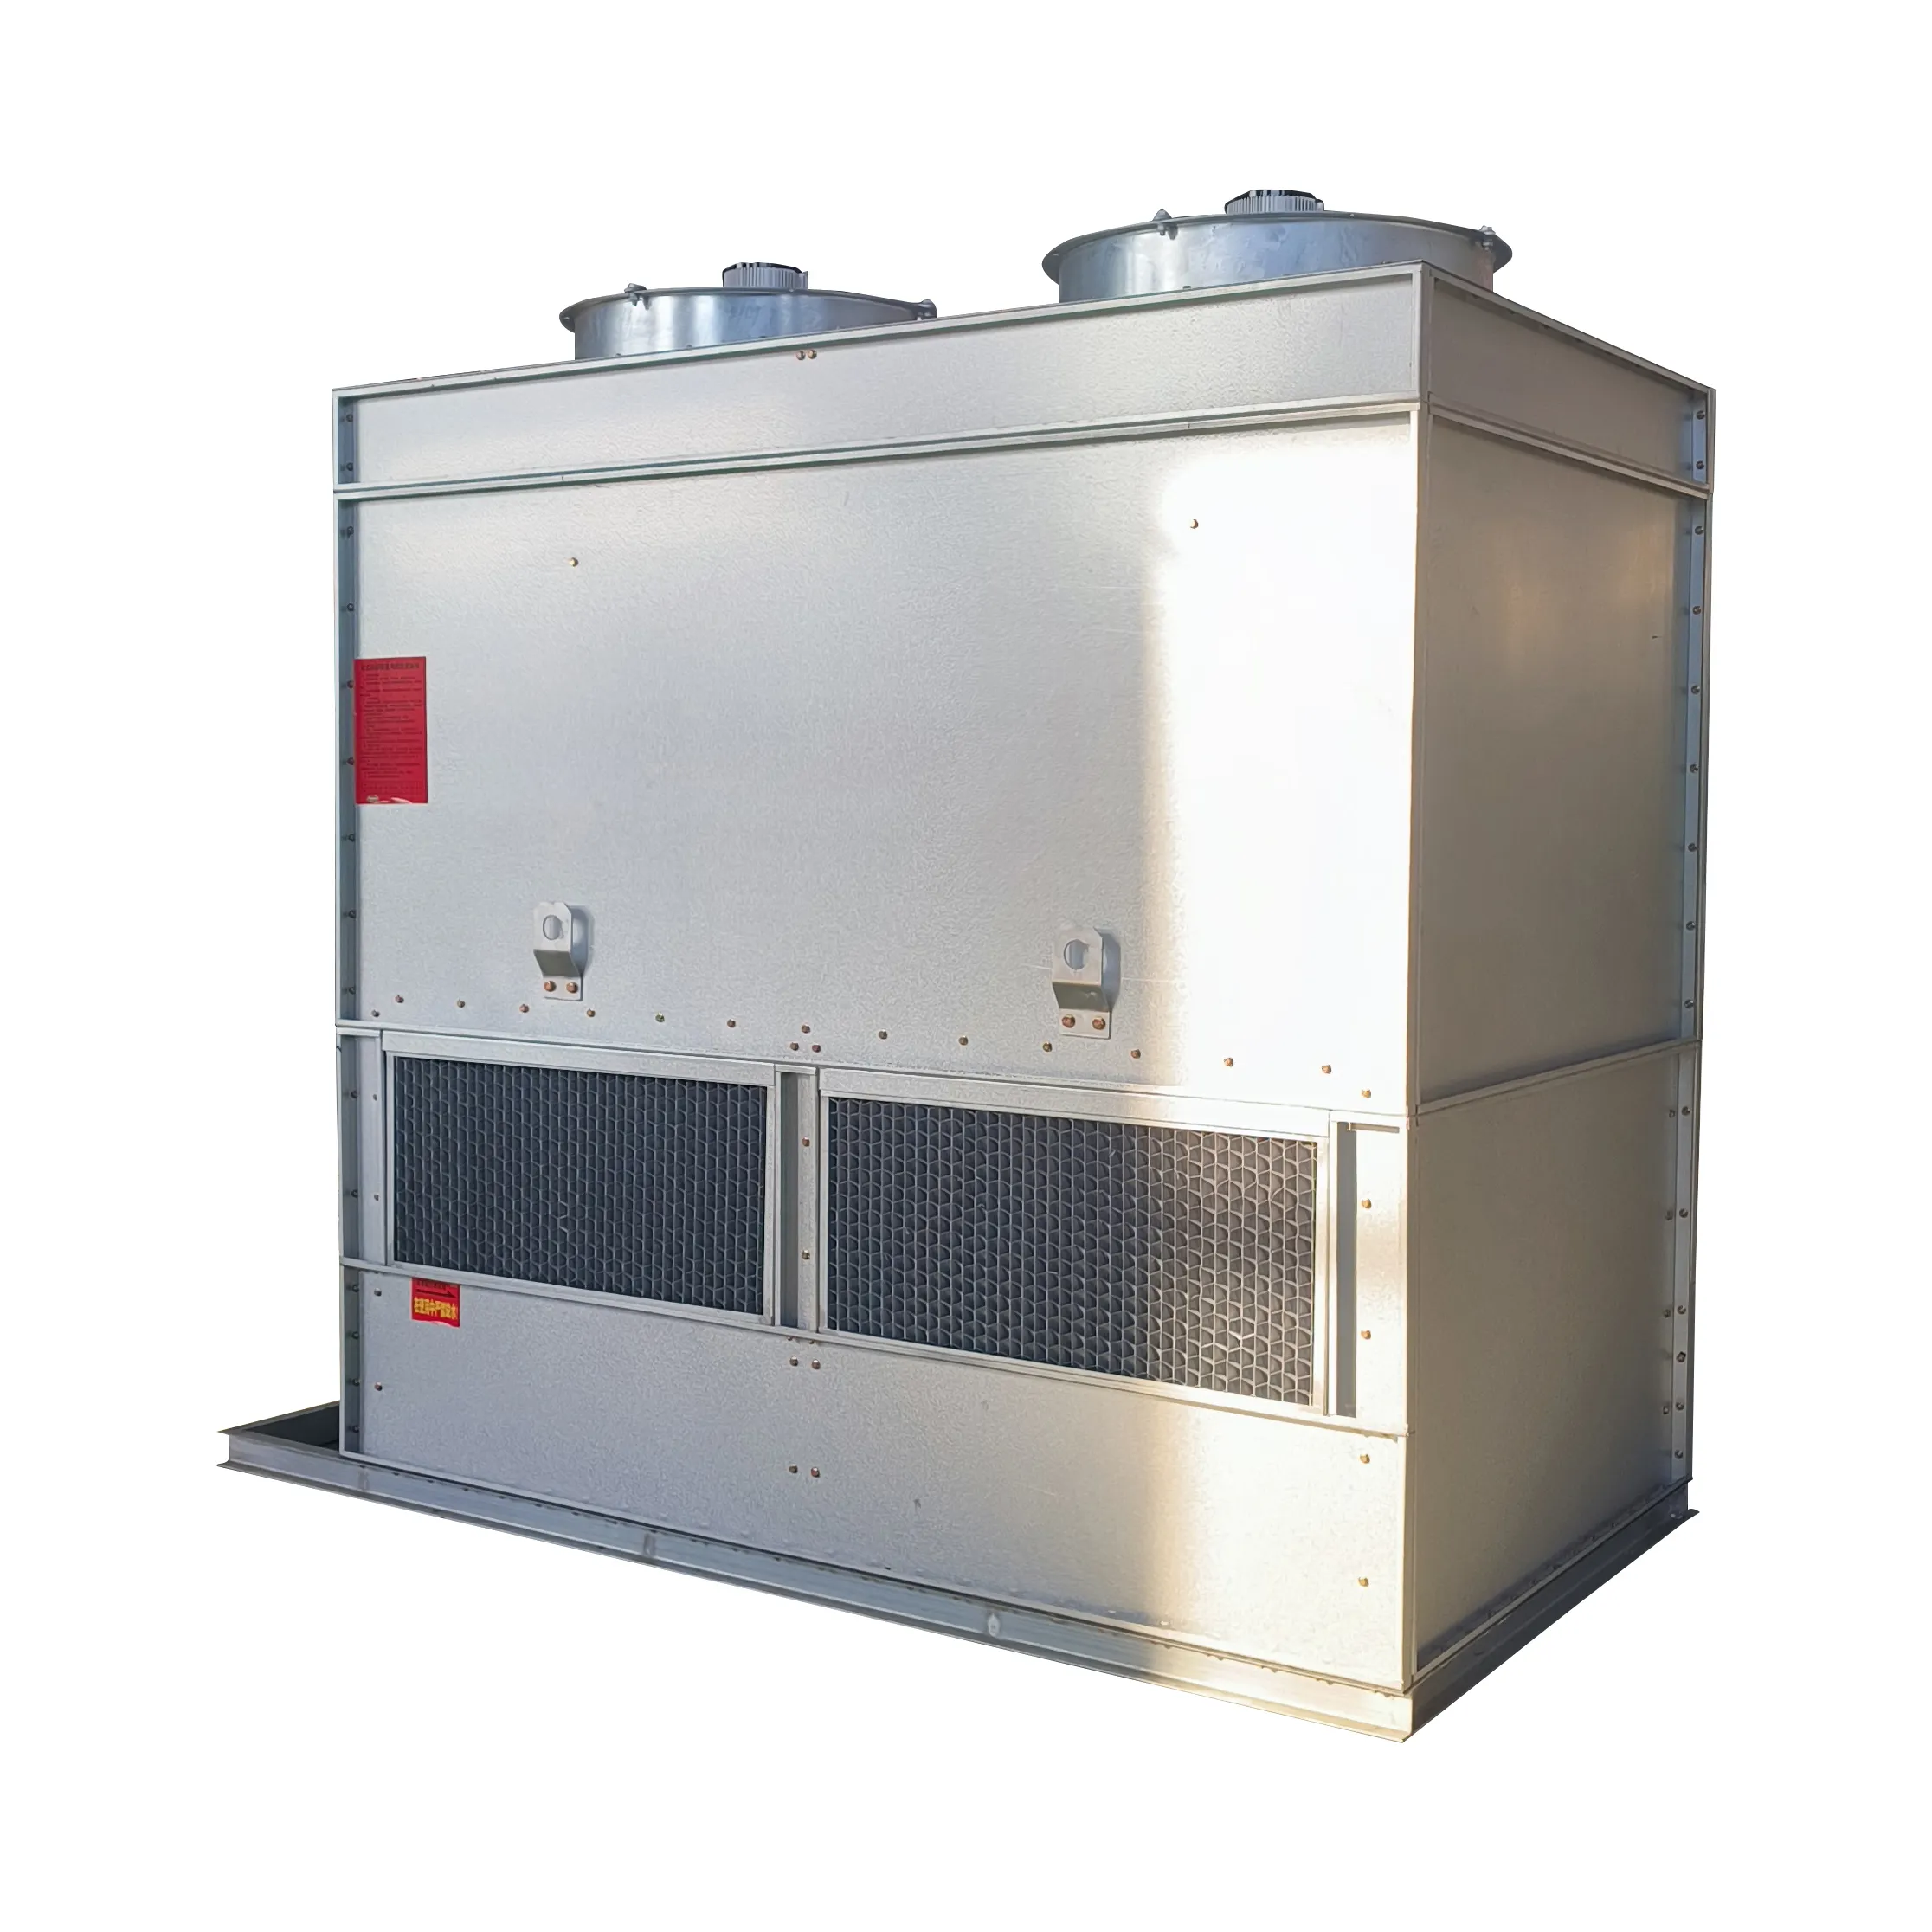 冷却塔配管図クローズドループ冷却塔メーカーの熱処理は、良好な冷却効果があります。